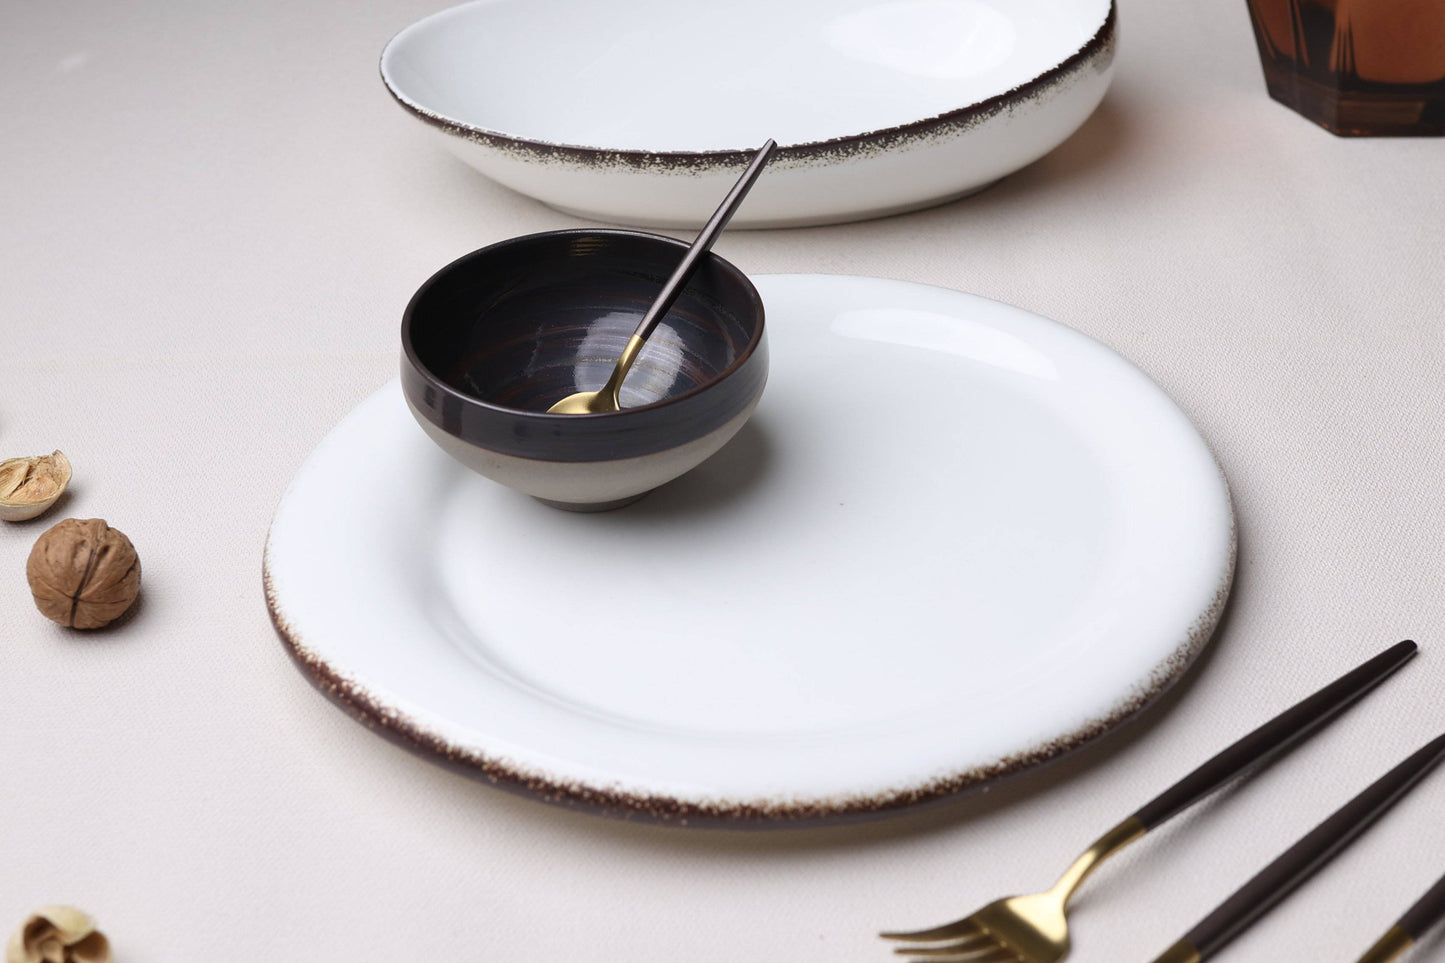 Tableware Celestial White Dinner Plate (set of 2 ) - The Decor Circle